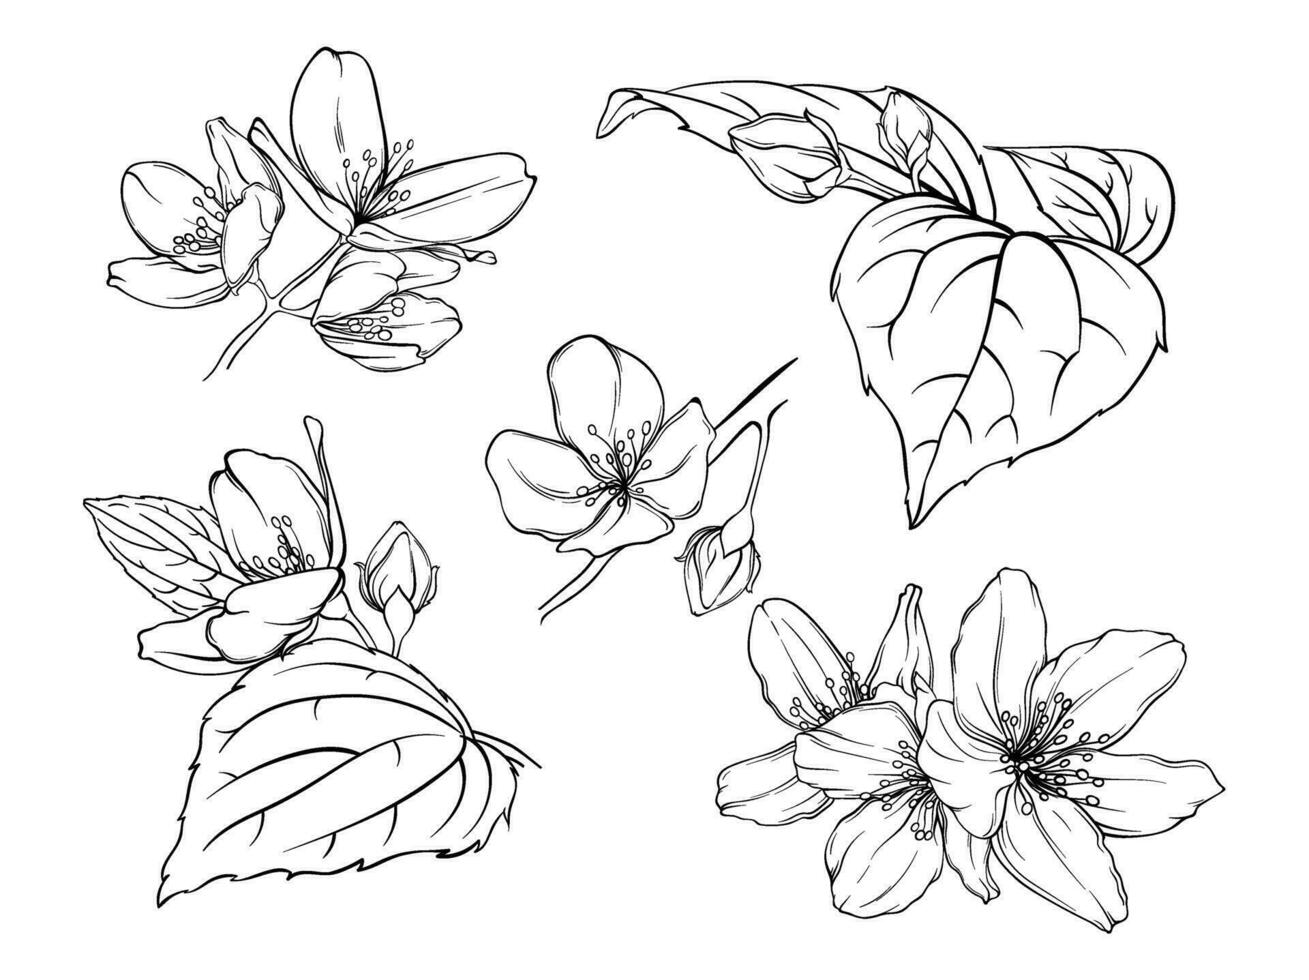 svartvit illustration av detaljer av en jasmin växt, körsbär blommor, äpple träd, skiss av delikat kronblad och löv vektor